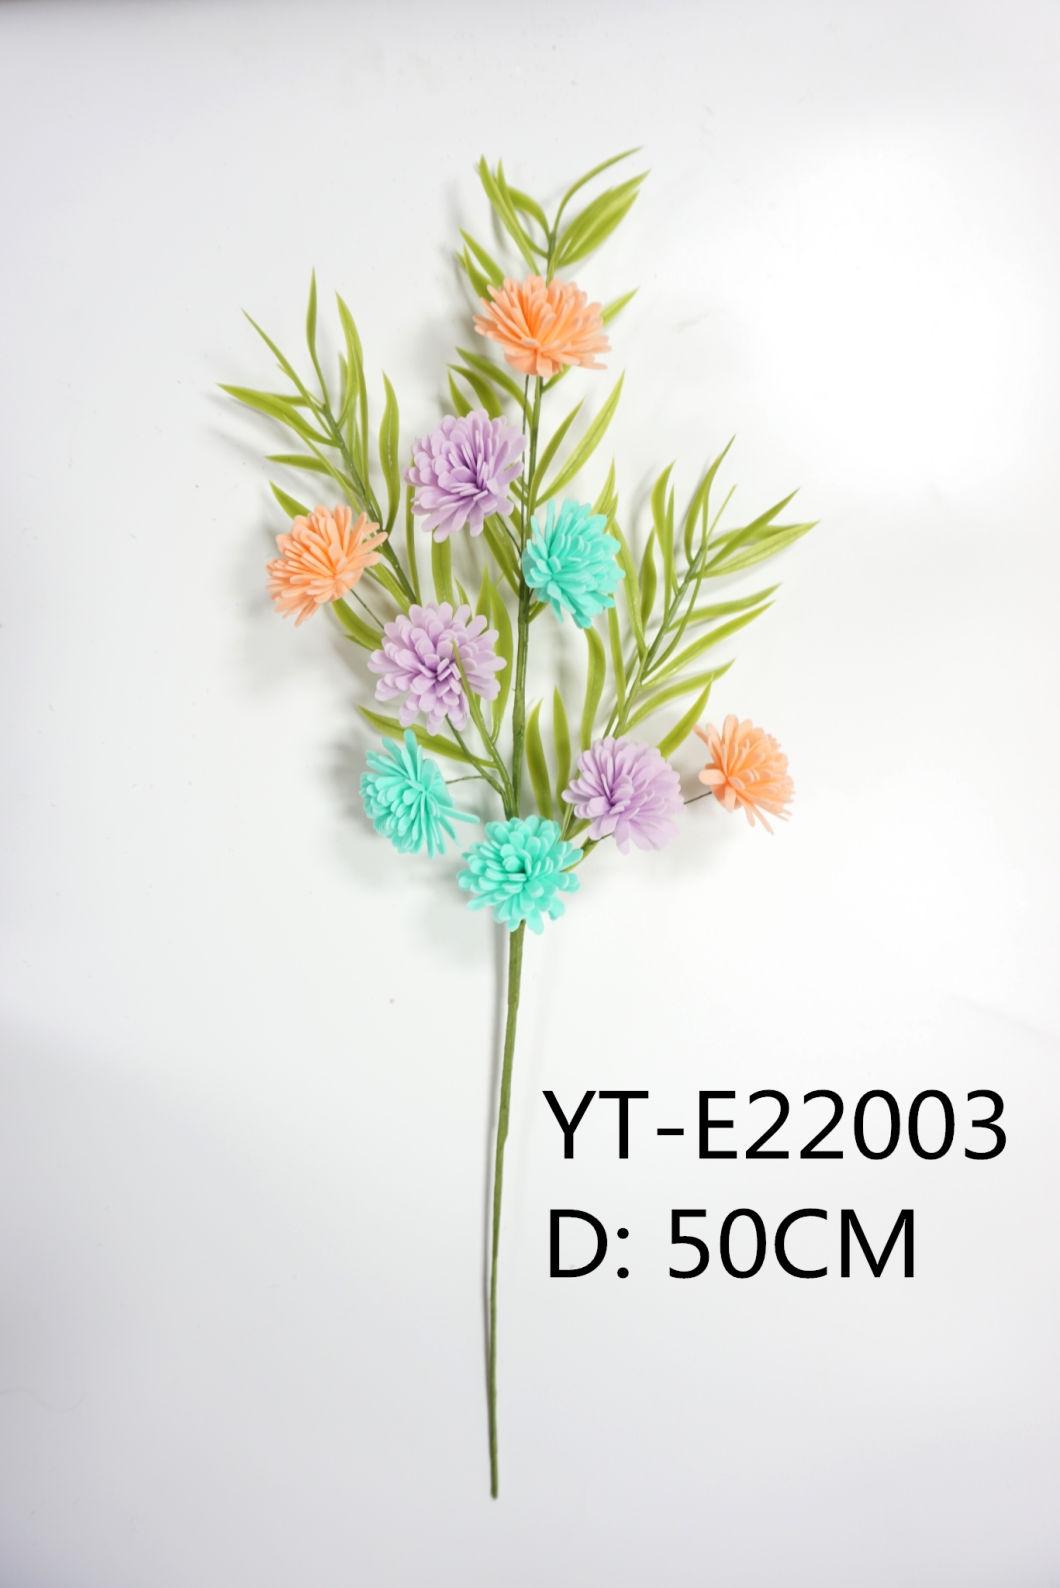 Yt-E22020 Hot Selling Factory Ornament Handmade Easter Egg Picks